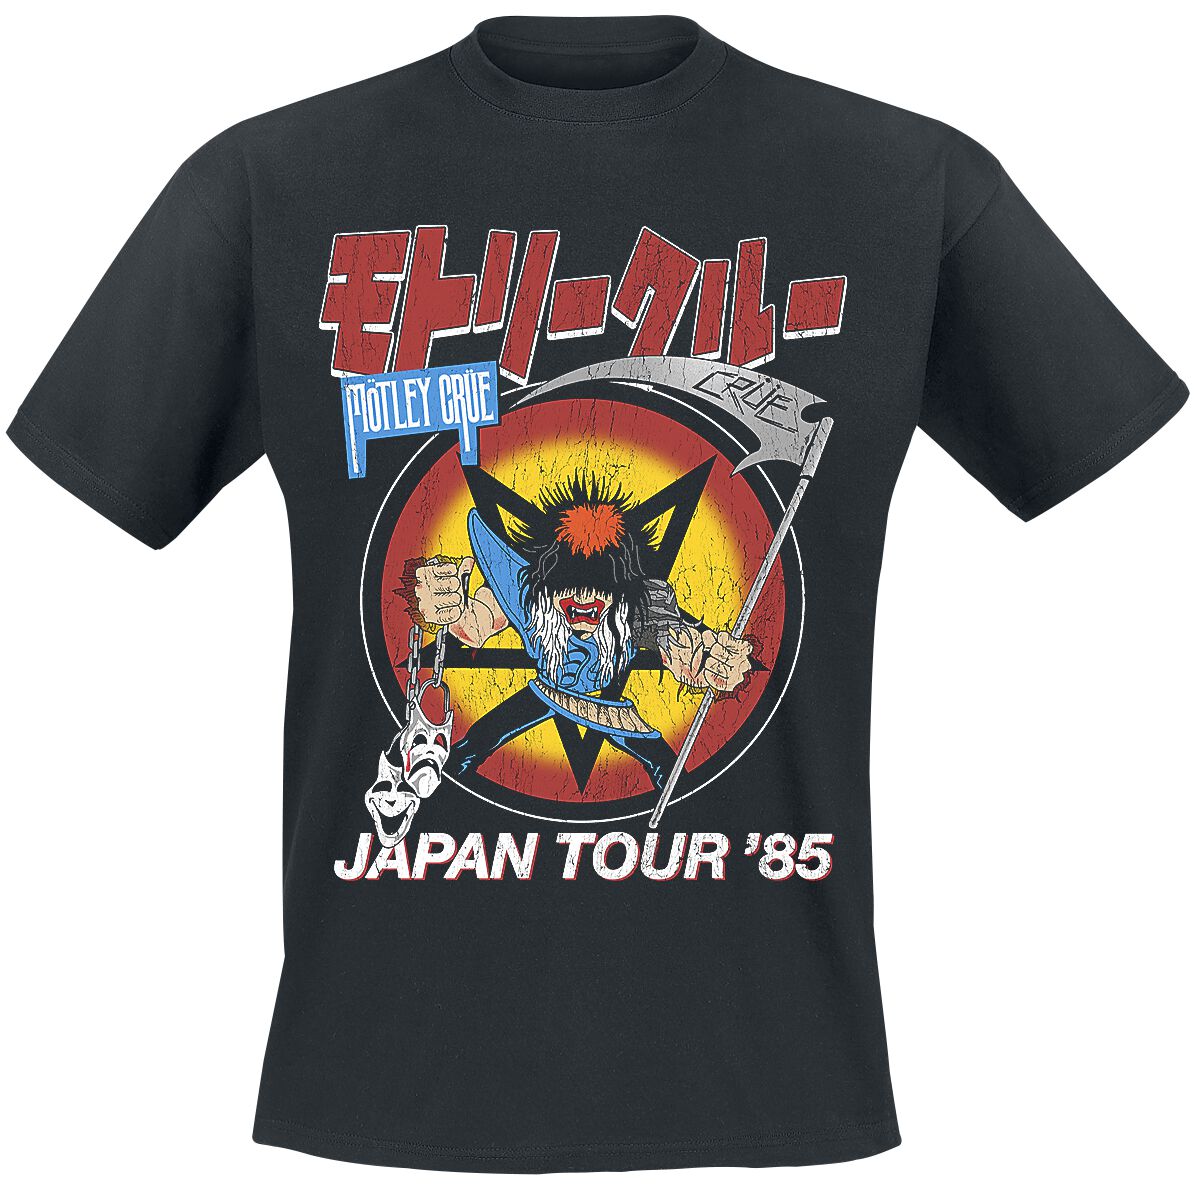 Mötley Crüe T-Shirt - Japan Tour - S bis 4XL - für Männer - Größe 4XL - schwarz  - Lizenziertes Merchandise!